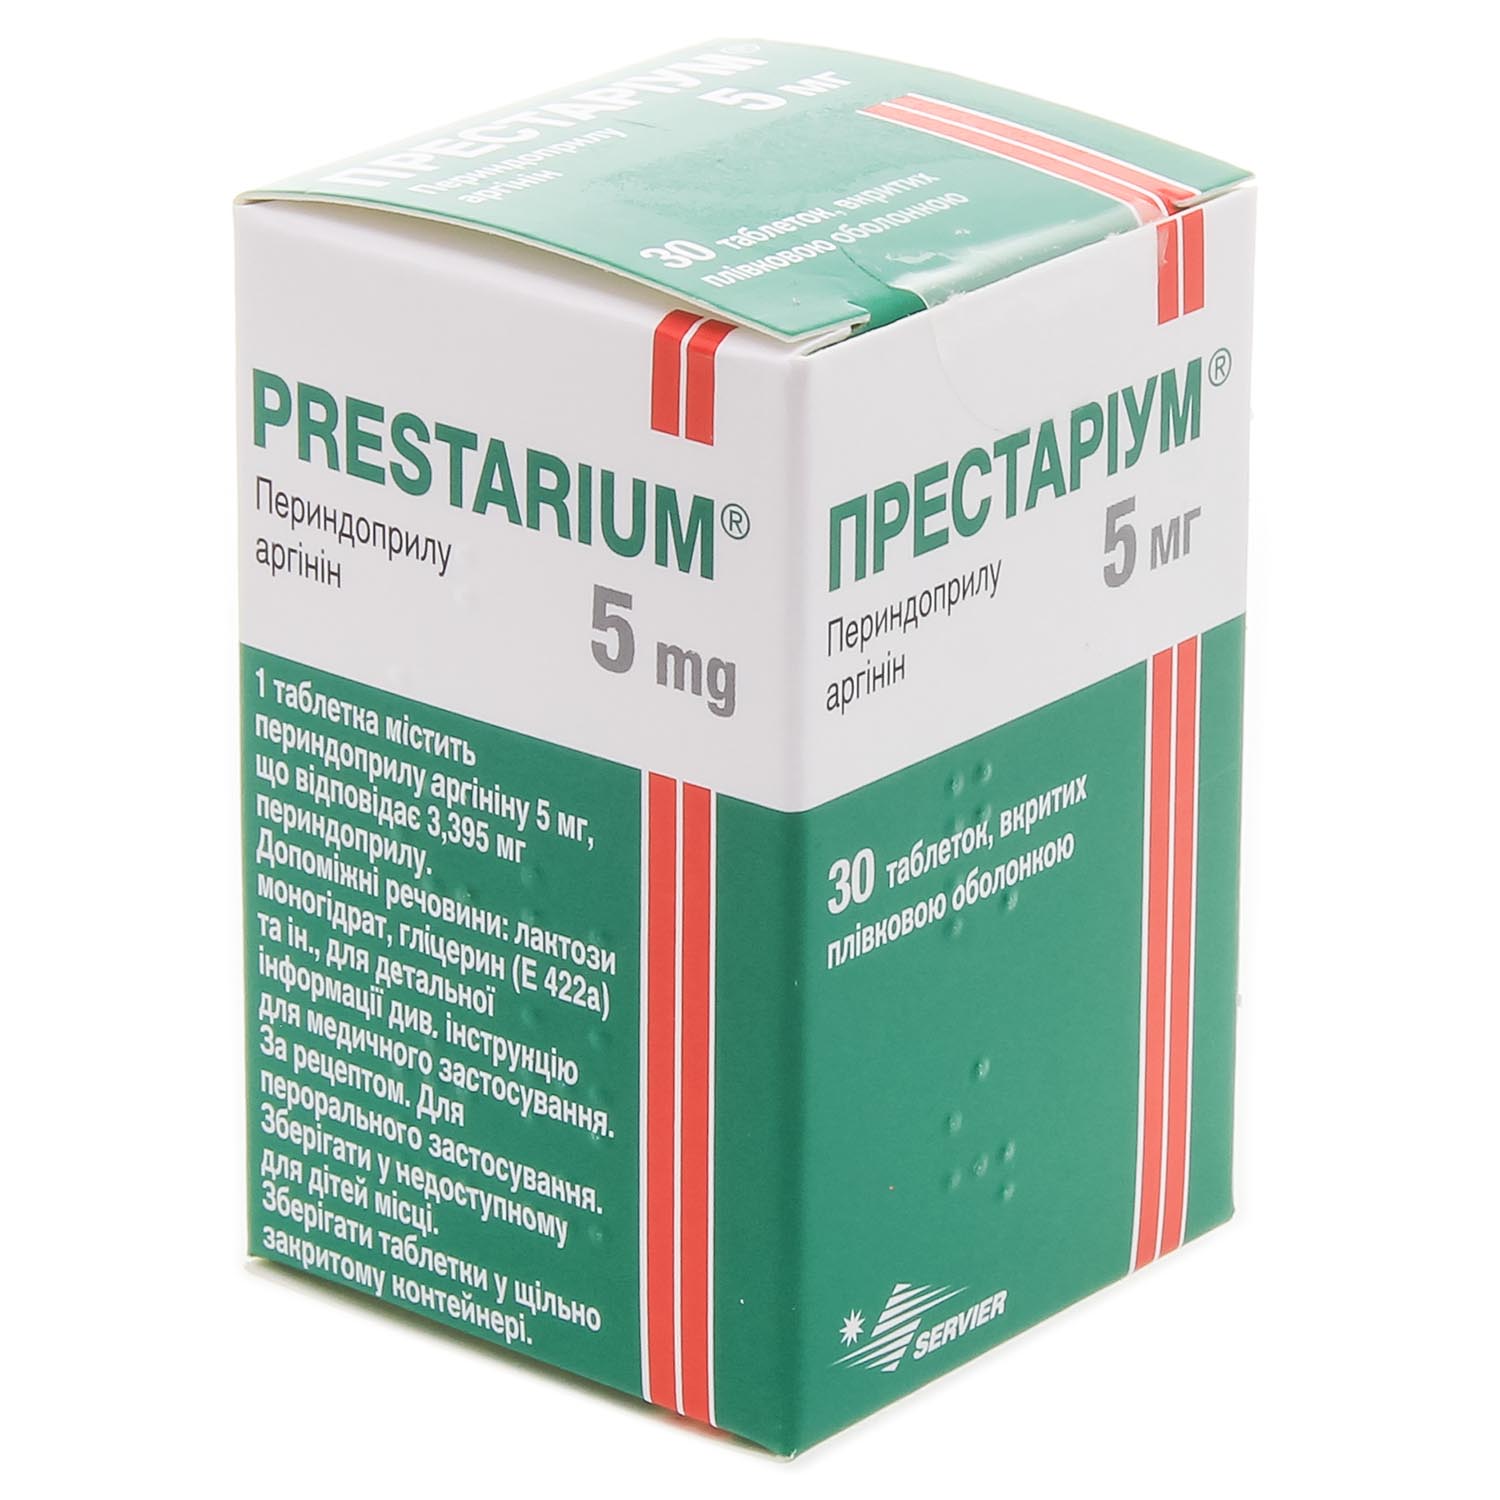 Принимать престариум вечером. Престариум 2.5 мг. Престариум 5 мг. Престариум 10 мг. Престариум 10 таблетки.